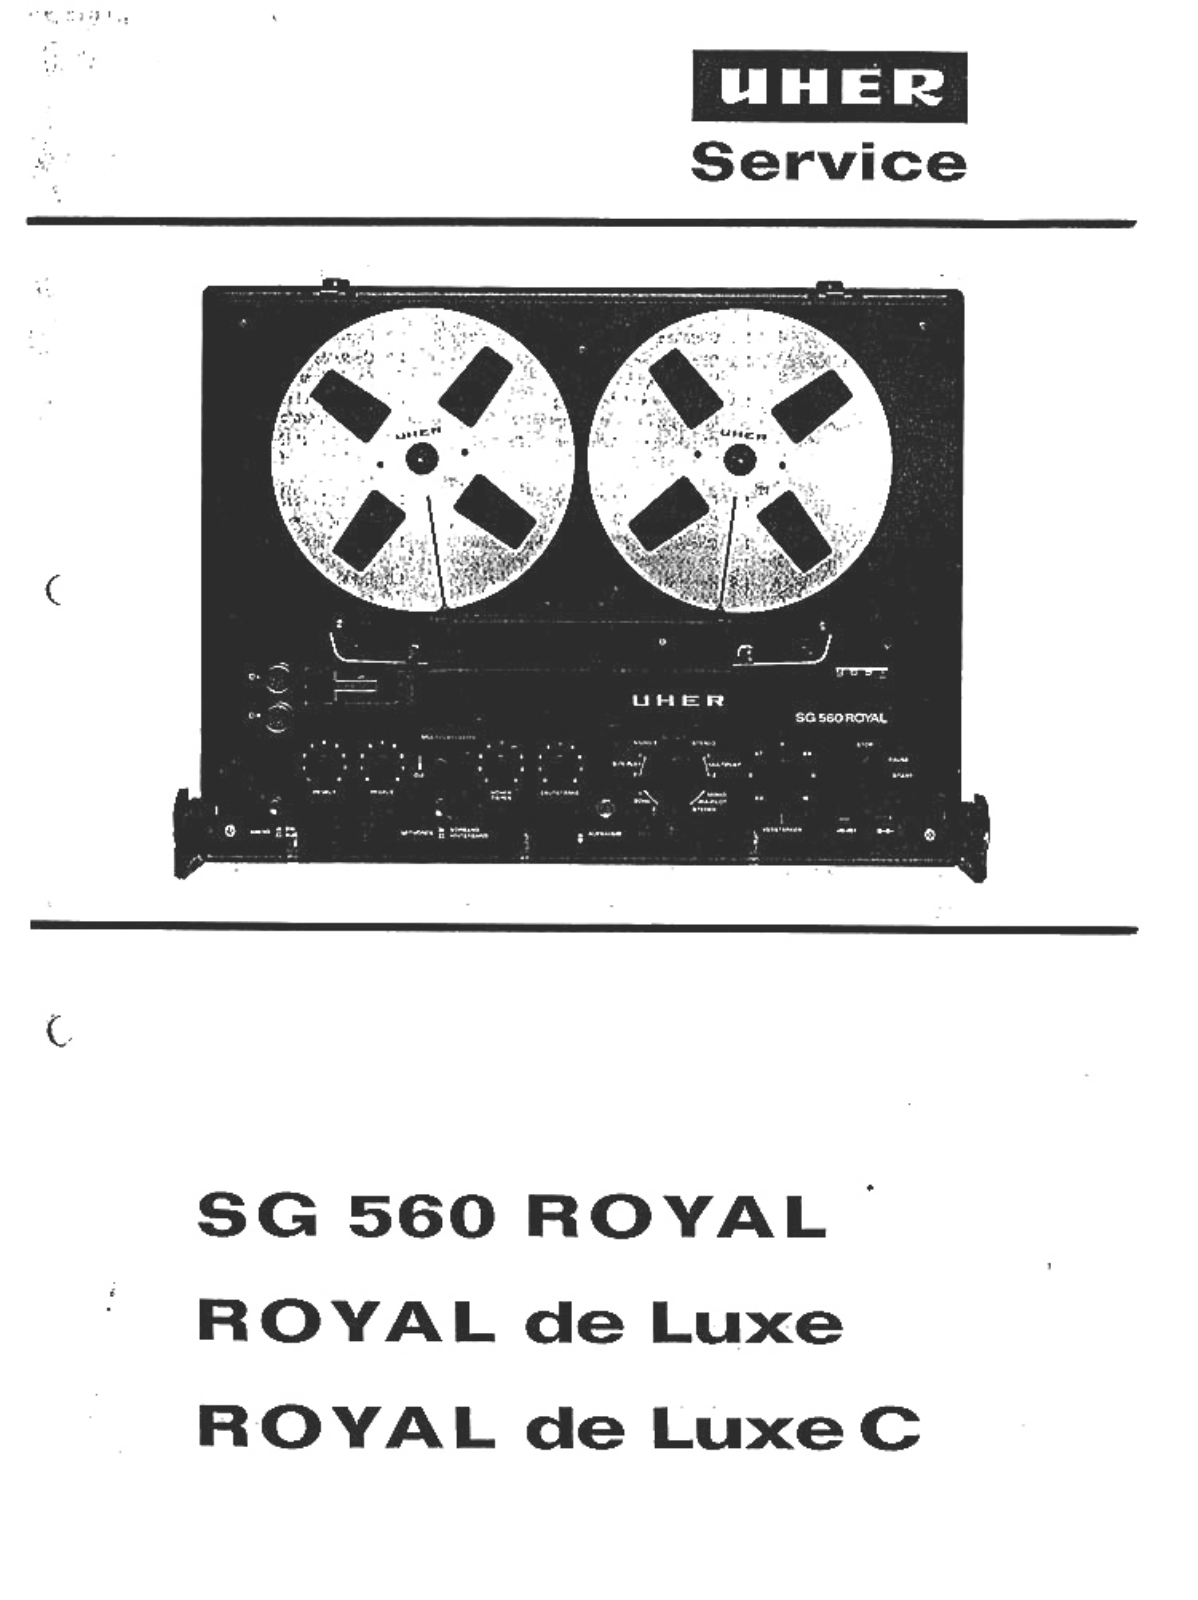 Uher Royal de Luxe C, SG-560 Royal de Luxe, SG-560 Royal de Luxe C, Royal de Luxe, Royal Service manual